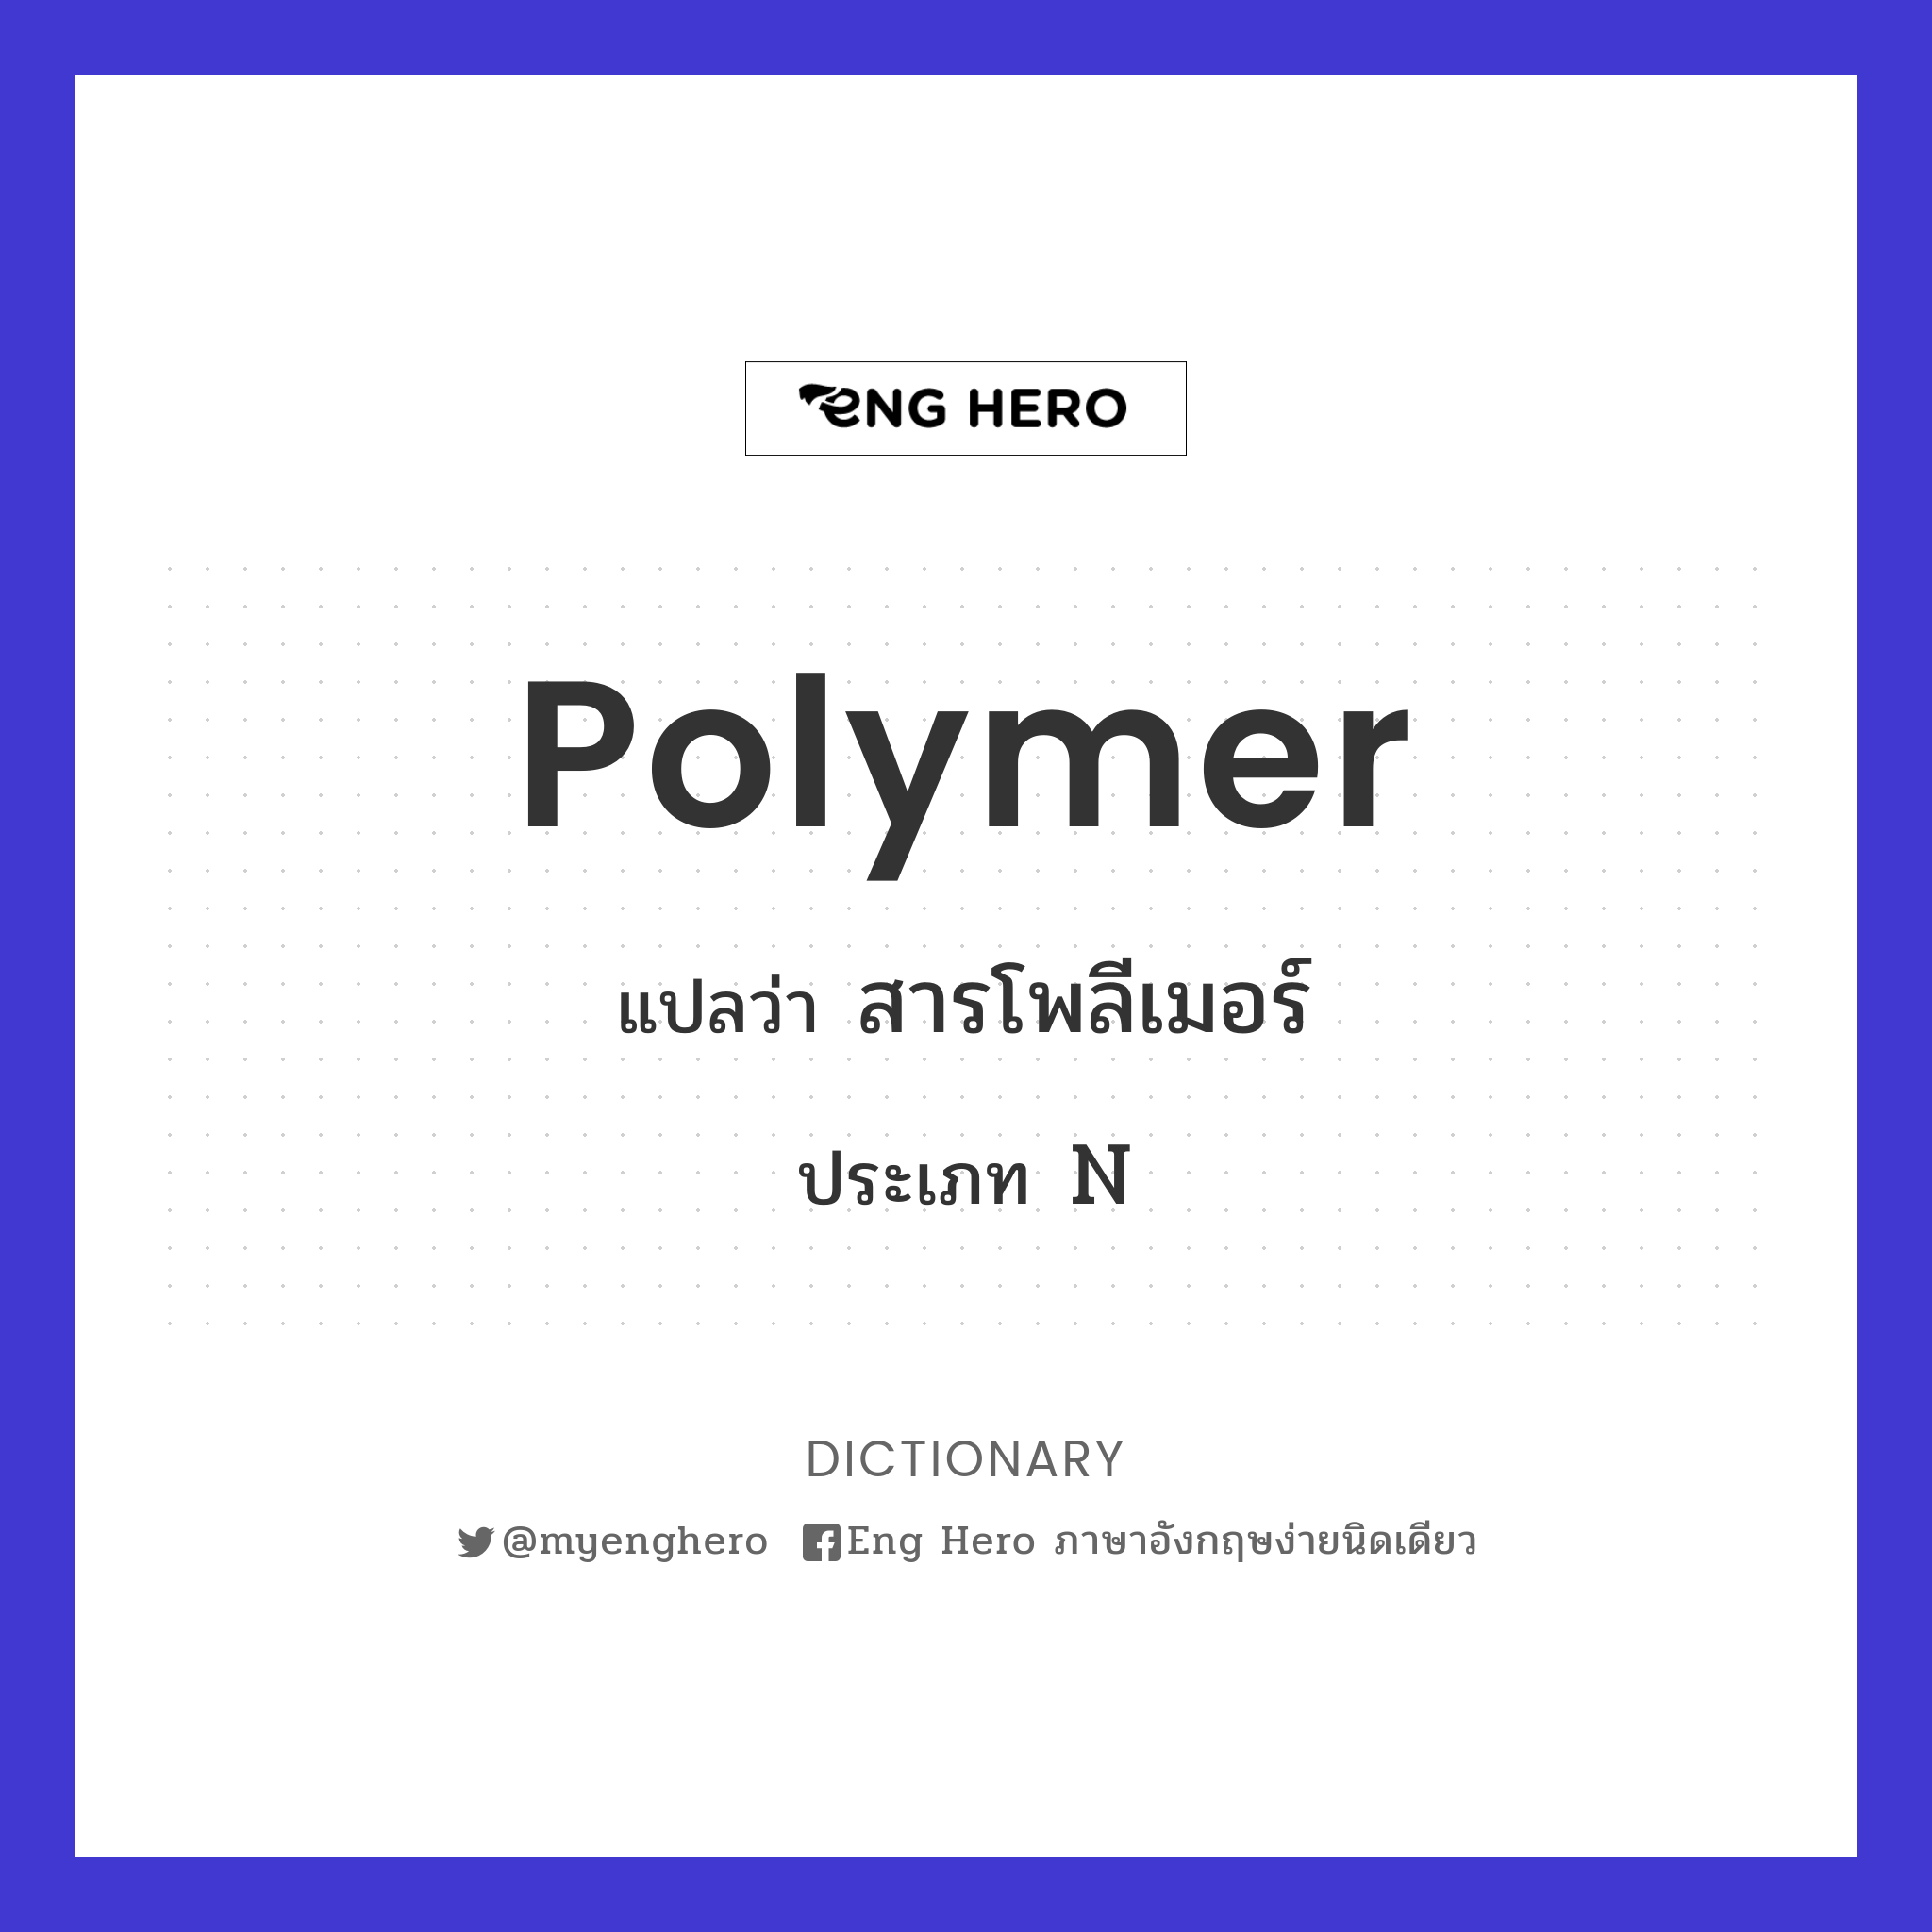 polymer